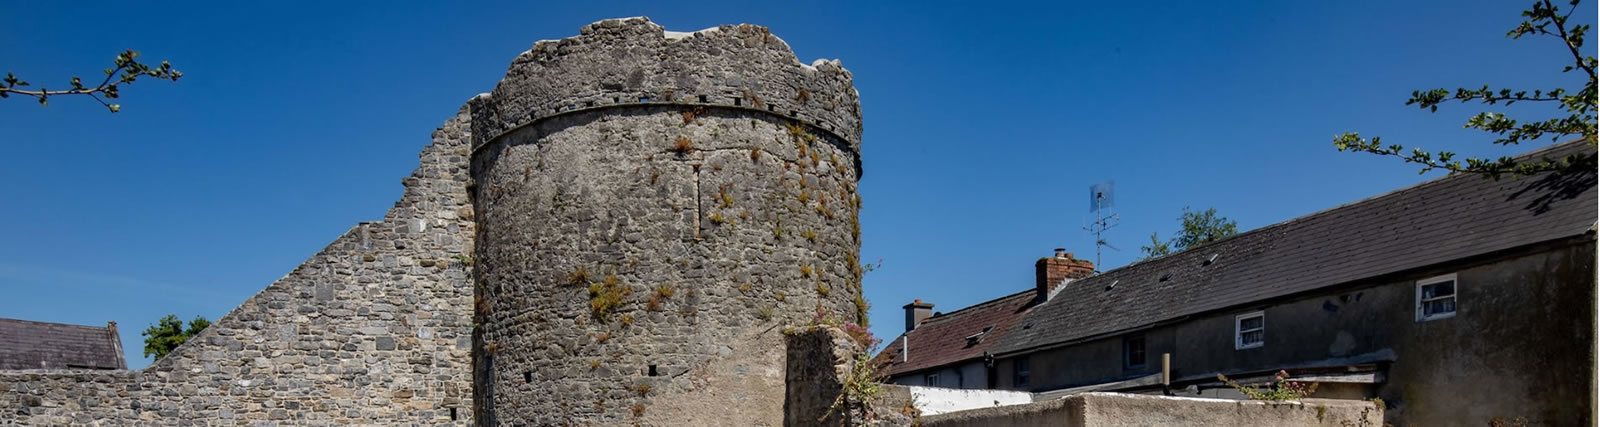 Wieża Talbots Mury miejskie Kilkenny